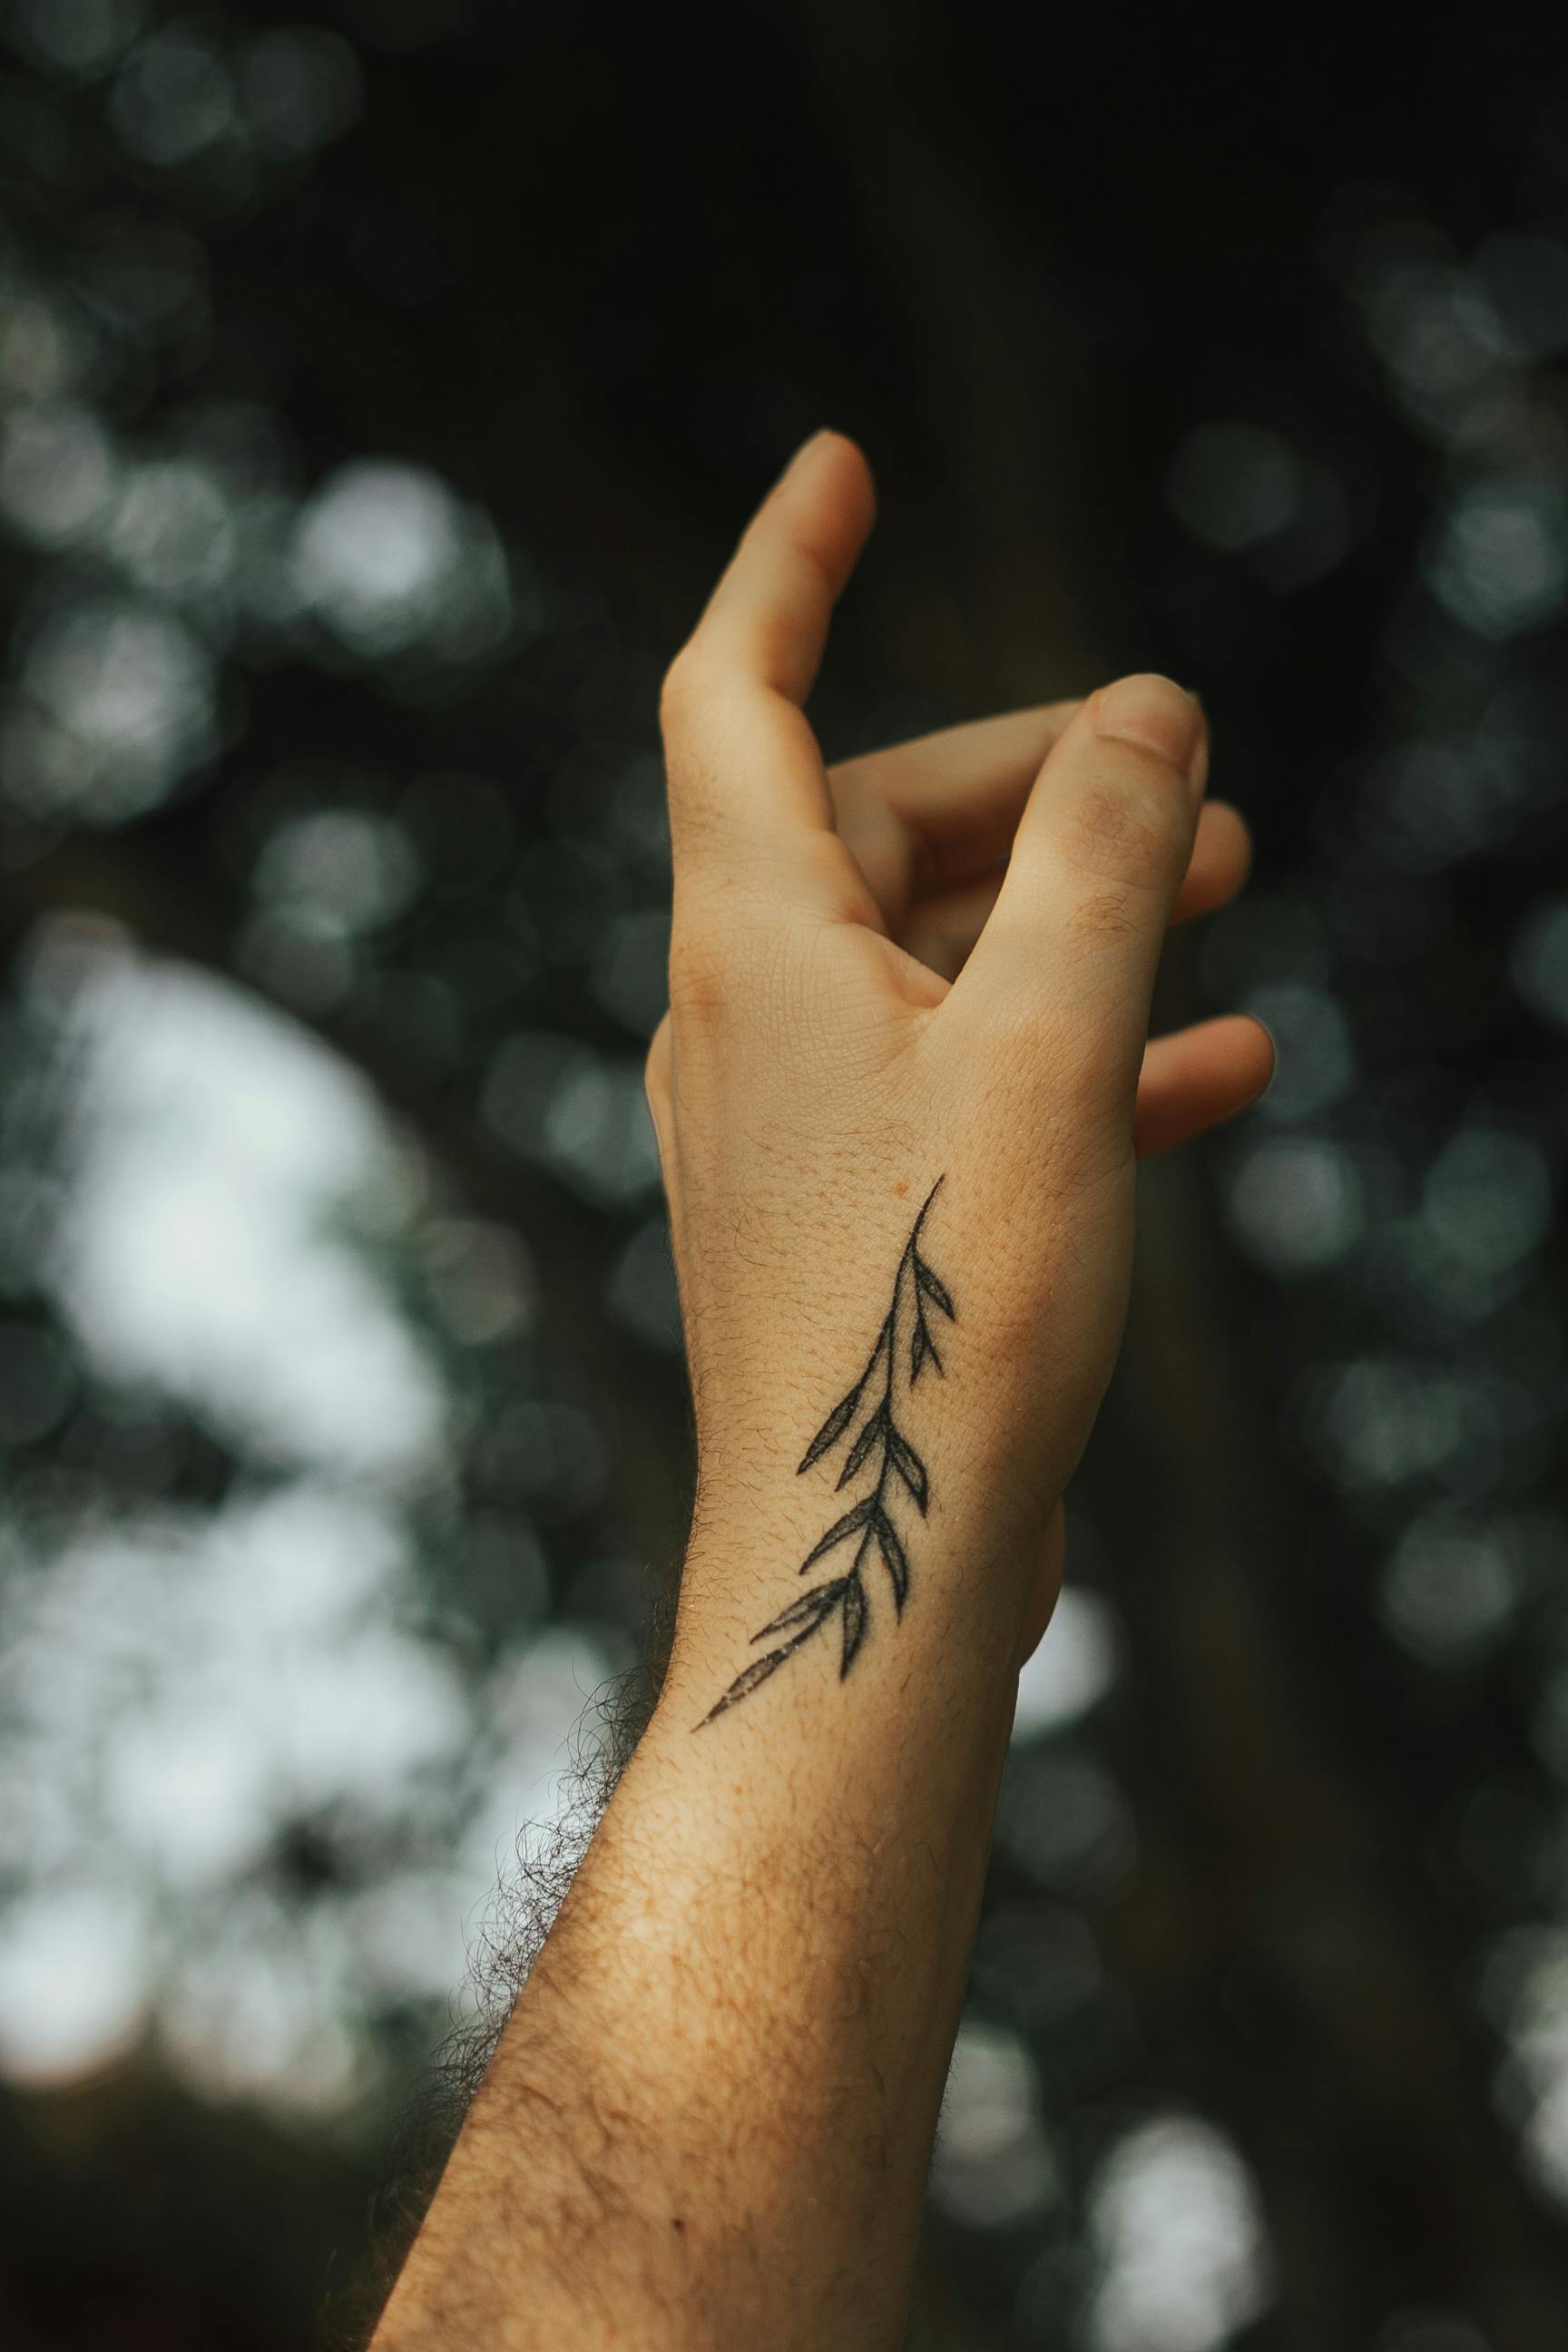 Untitled on Tumblr: 🍂 #leaf #leaftattoo #tattoo #tattoos #sgtattoo  #sgtattoos #singaporetattoo #singaporetattoos #inked #design #create #art...